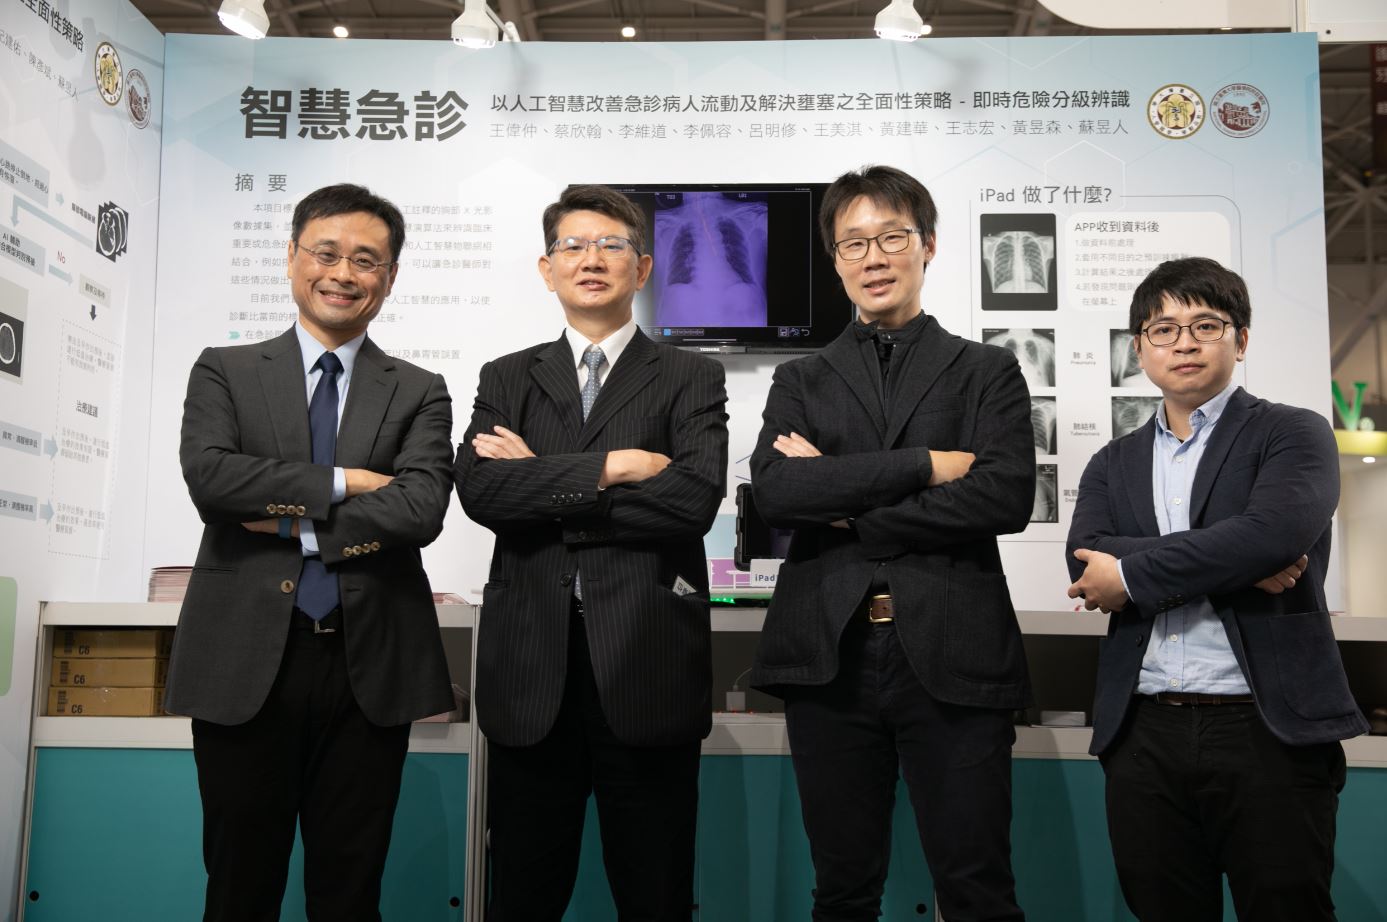 台灣醫療科技展 聚焦防疫、AI、細胞治療3亮點